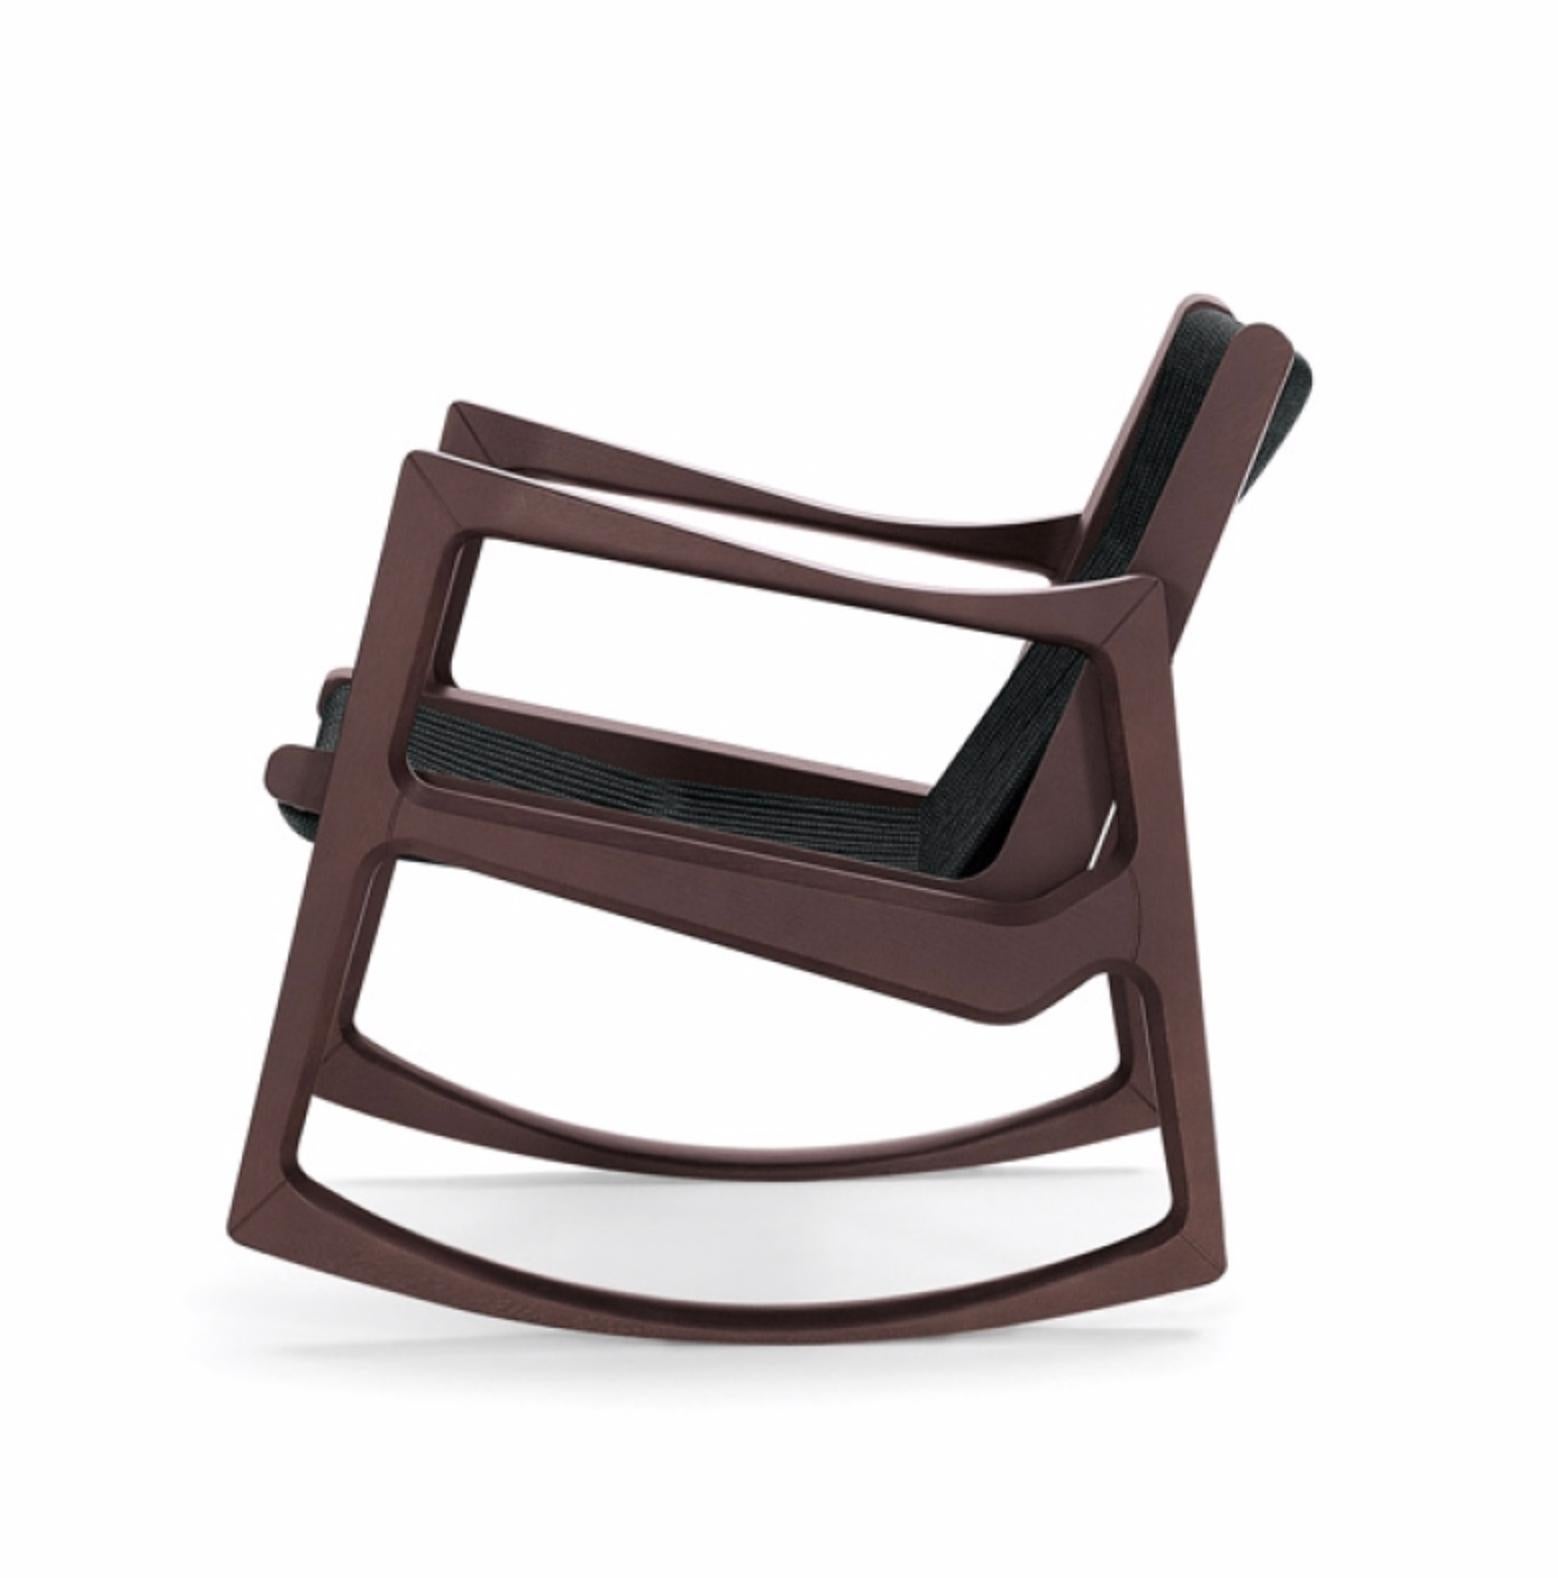 La chaise à bascule Euvira de Jader Almeida est un mélange magistral d'hier et d'aujourd'hui, de légèreté et de solidité. Avec ses lignes fluides orchestrées avec précision, qui s'épaississent et s'effilent pour former un rythme agréable, la chaise